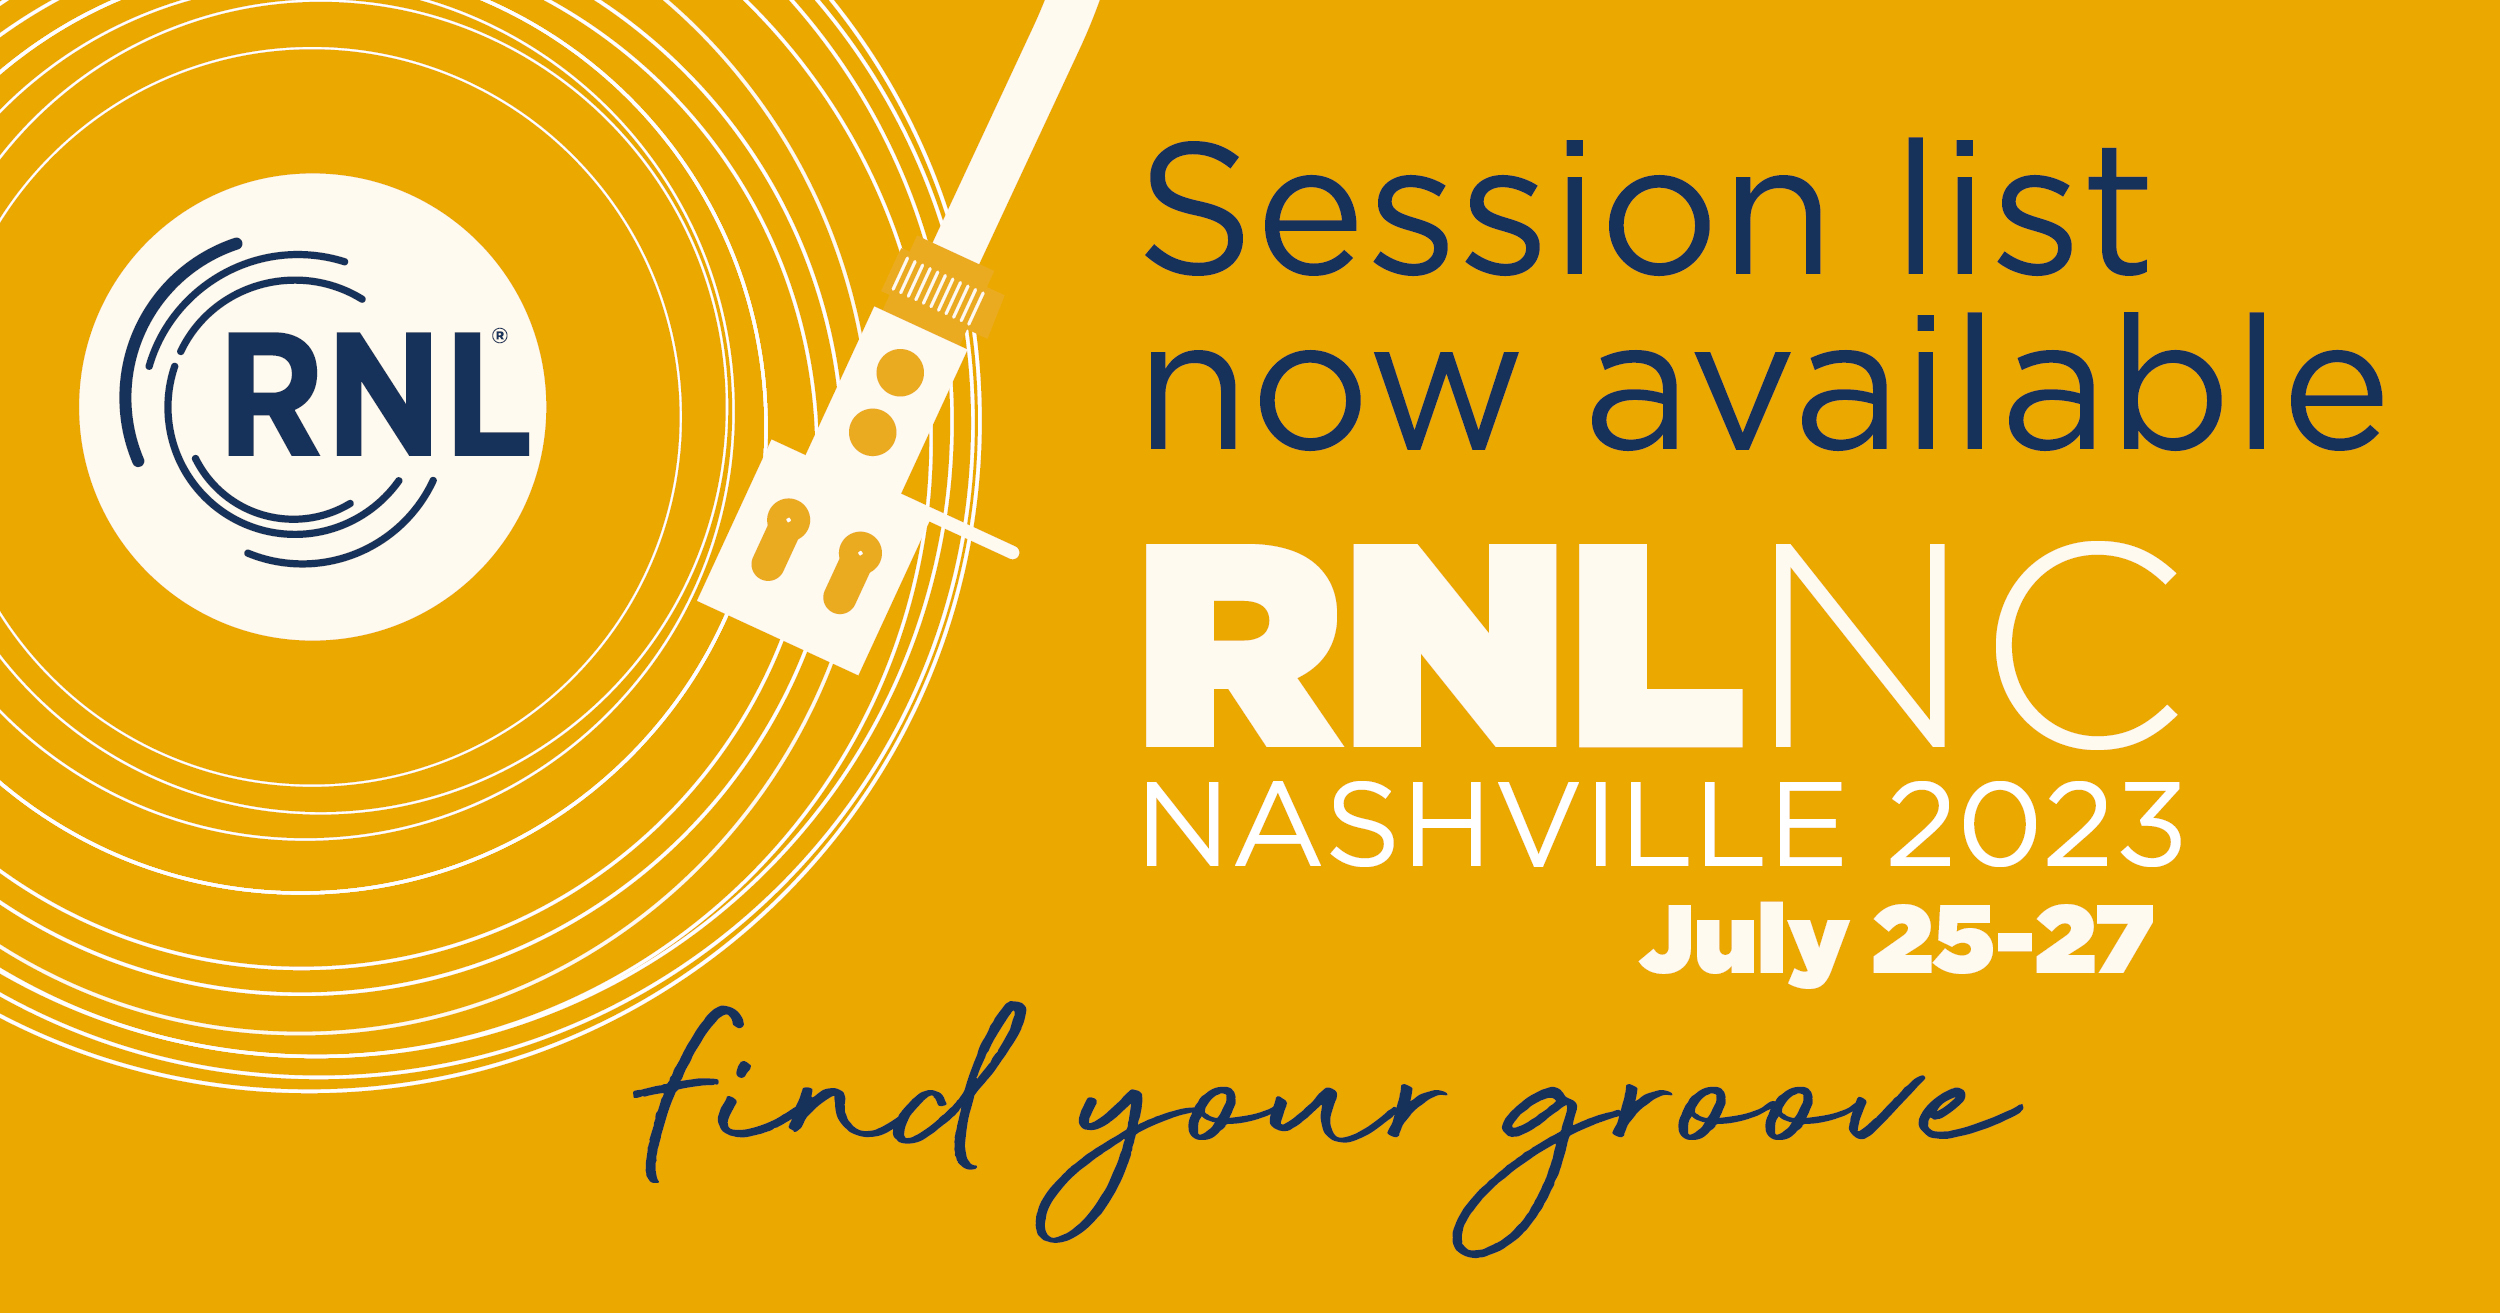 RNL National Conference July 2527, 2023 Nashville, TN